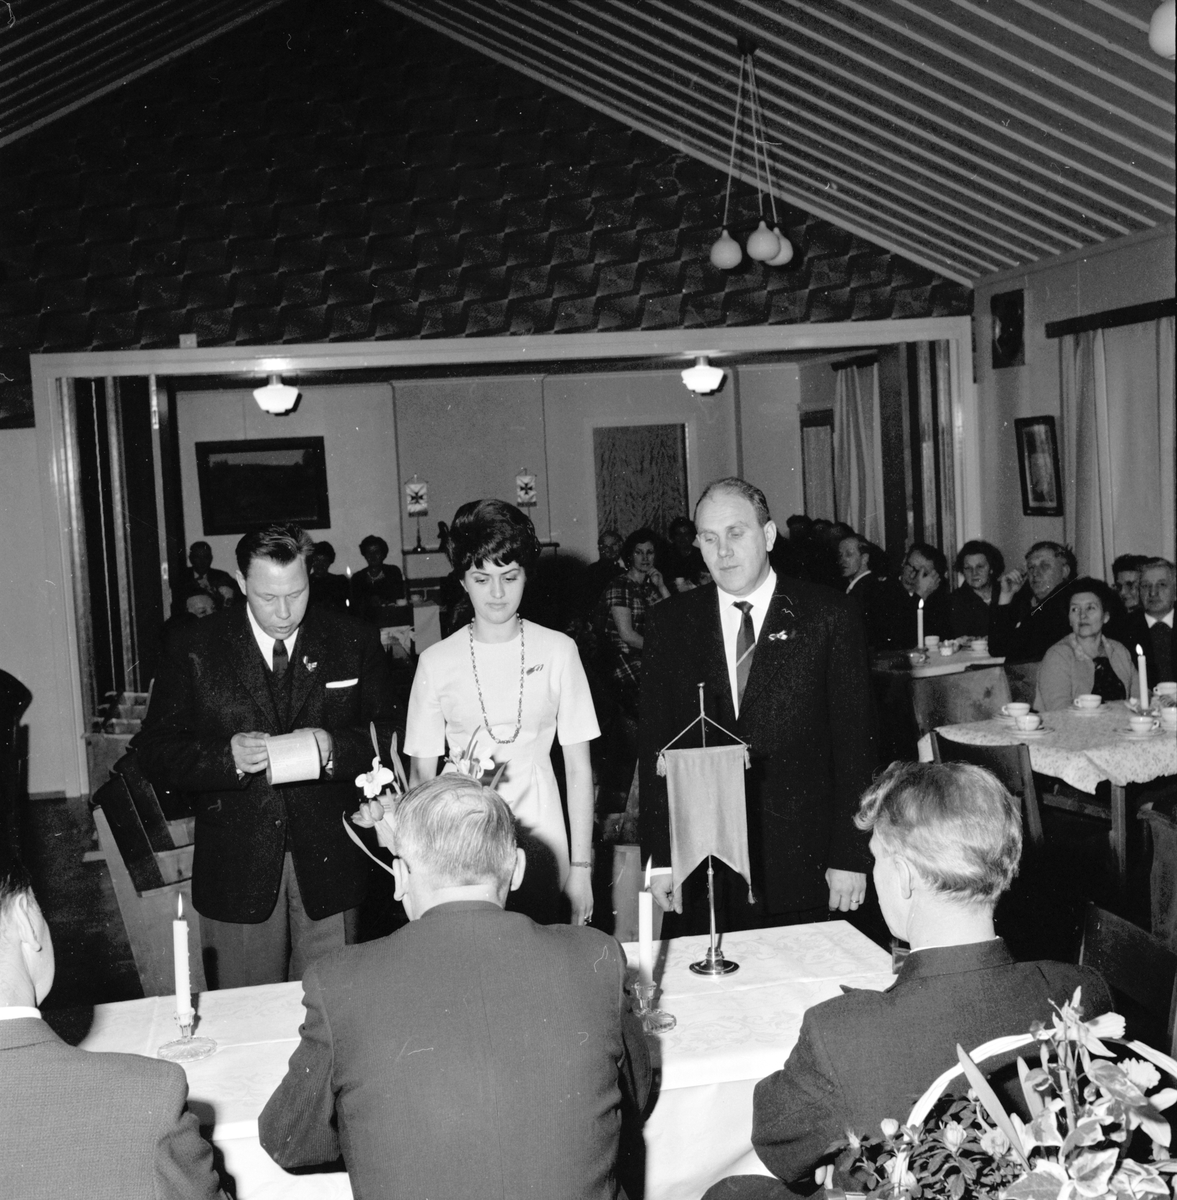 Arbrå,
Hantverksförening,
Gesällutnämning i Flästa ordenshus,
2 Februari 1963